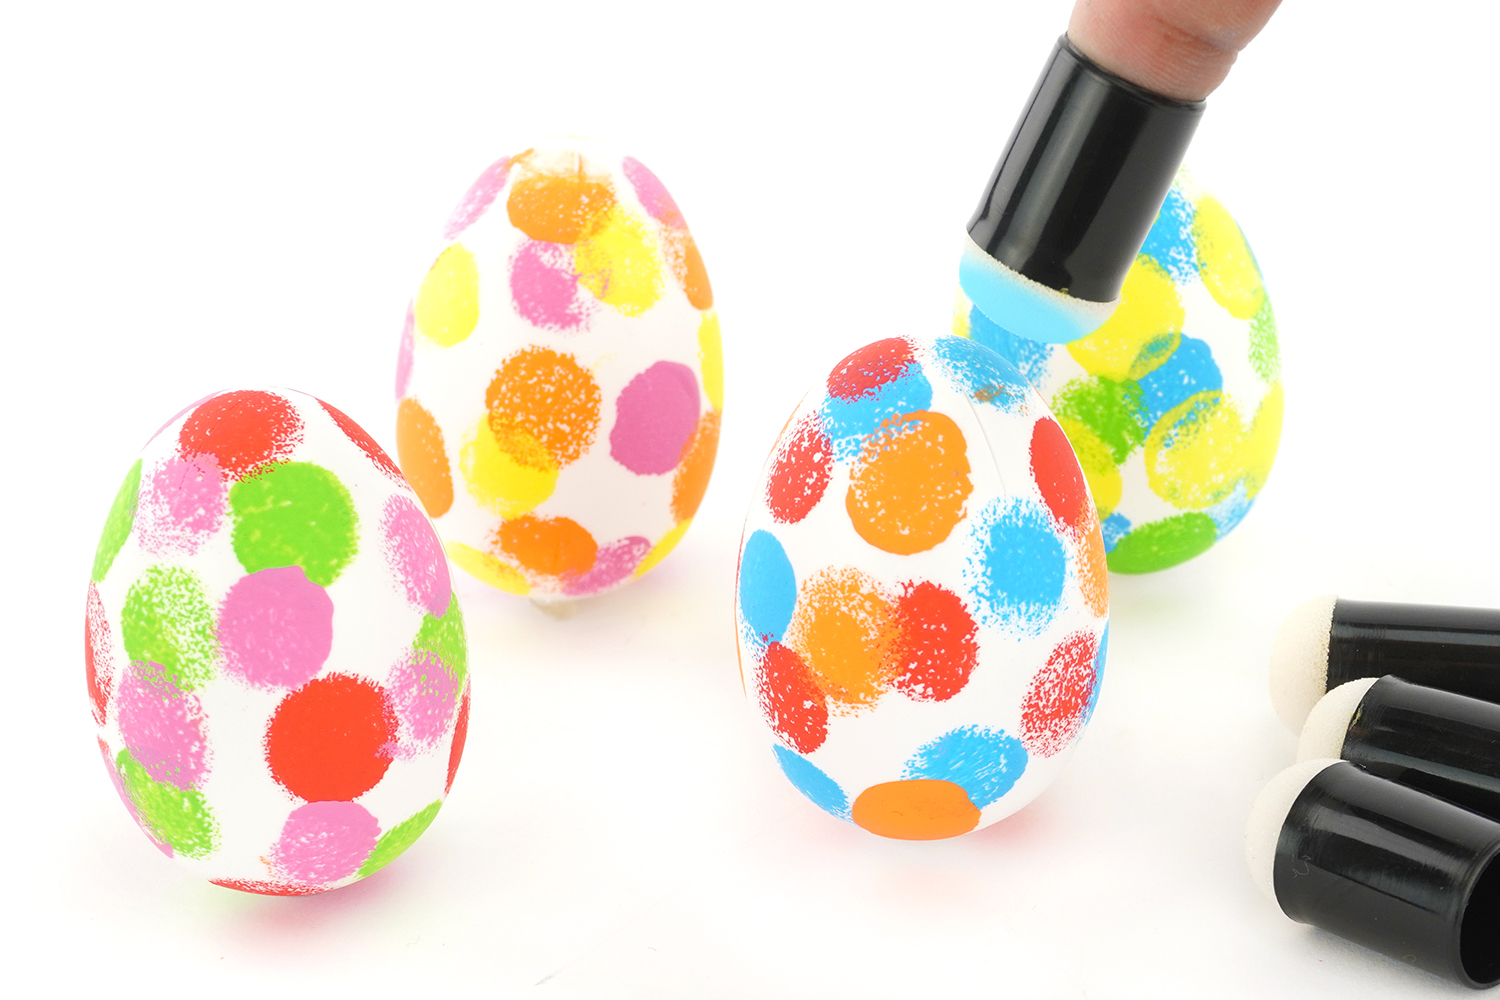 Comment décorer des œufs de Pâques?